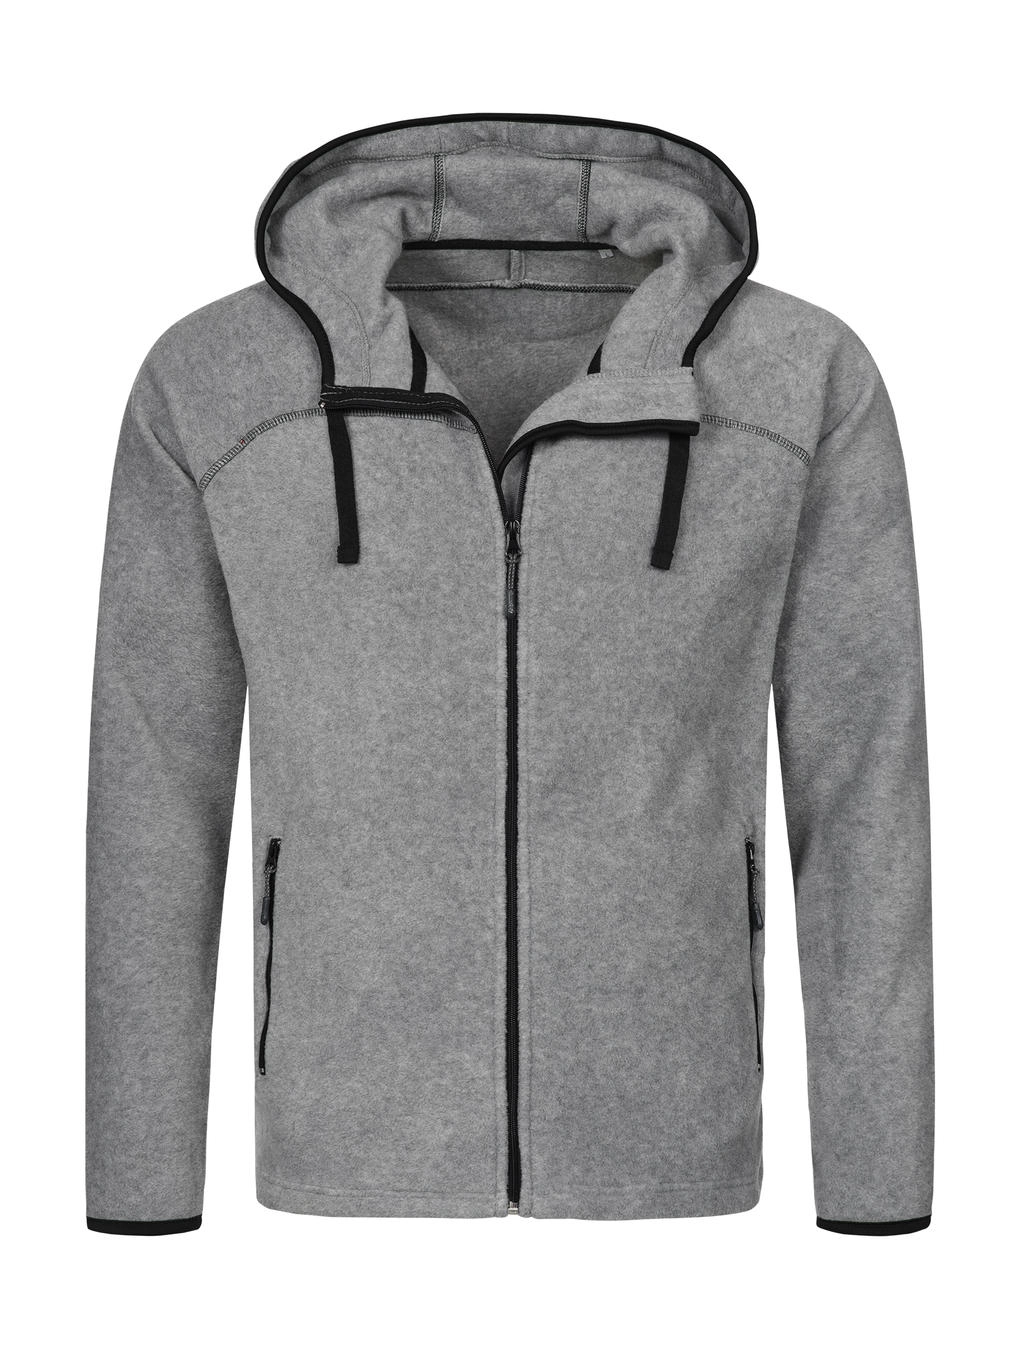 Power Fleece Jacket zum Besticken und Bedrucken in der Farbe Grey Heather mit Ihren Logo, Schriftzug oder Motiv.